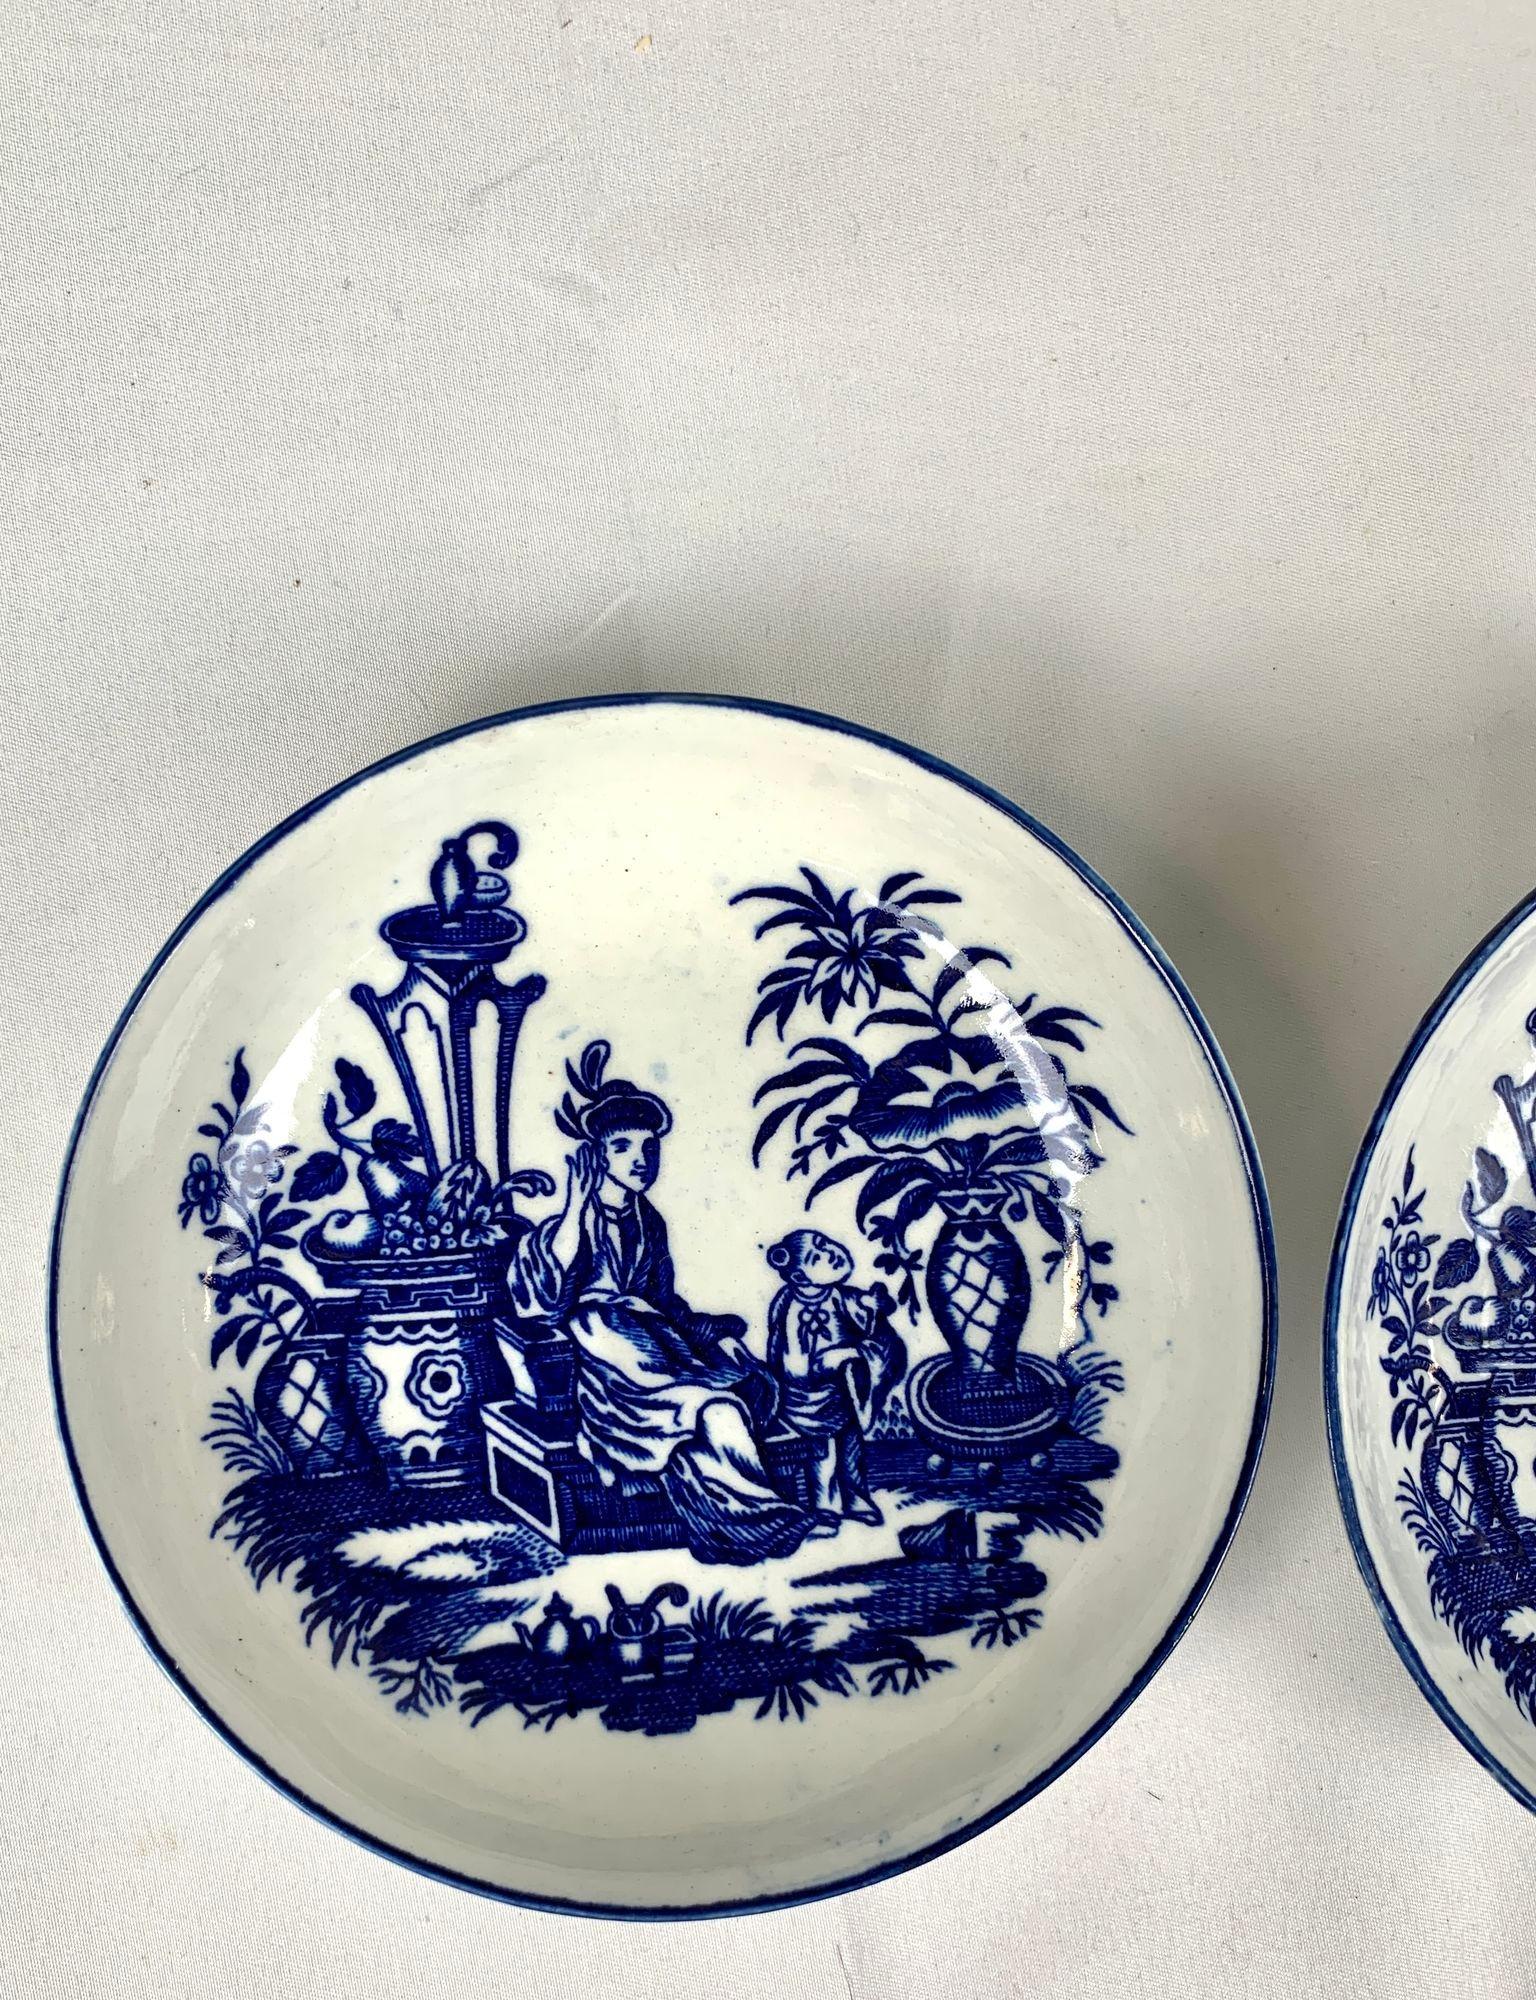 Cette paire de soucoupes en porcelaine bleue et blanche a été fabriquée par CIRCA en Angleterre vers 1785.
Peints en bleu sous glaçure, ils représentent une charmante scène de chinoiserie montrant une mère et son fils dans un jardin luxuriant avec